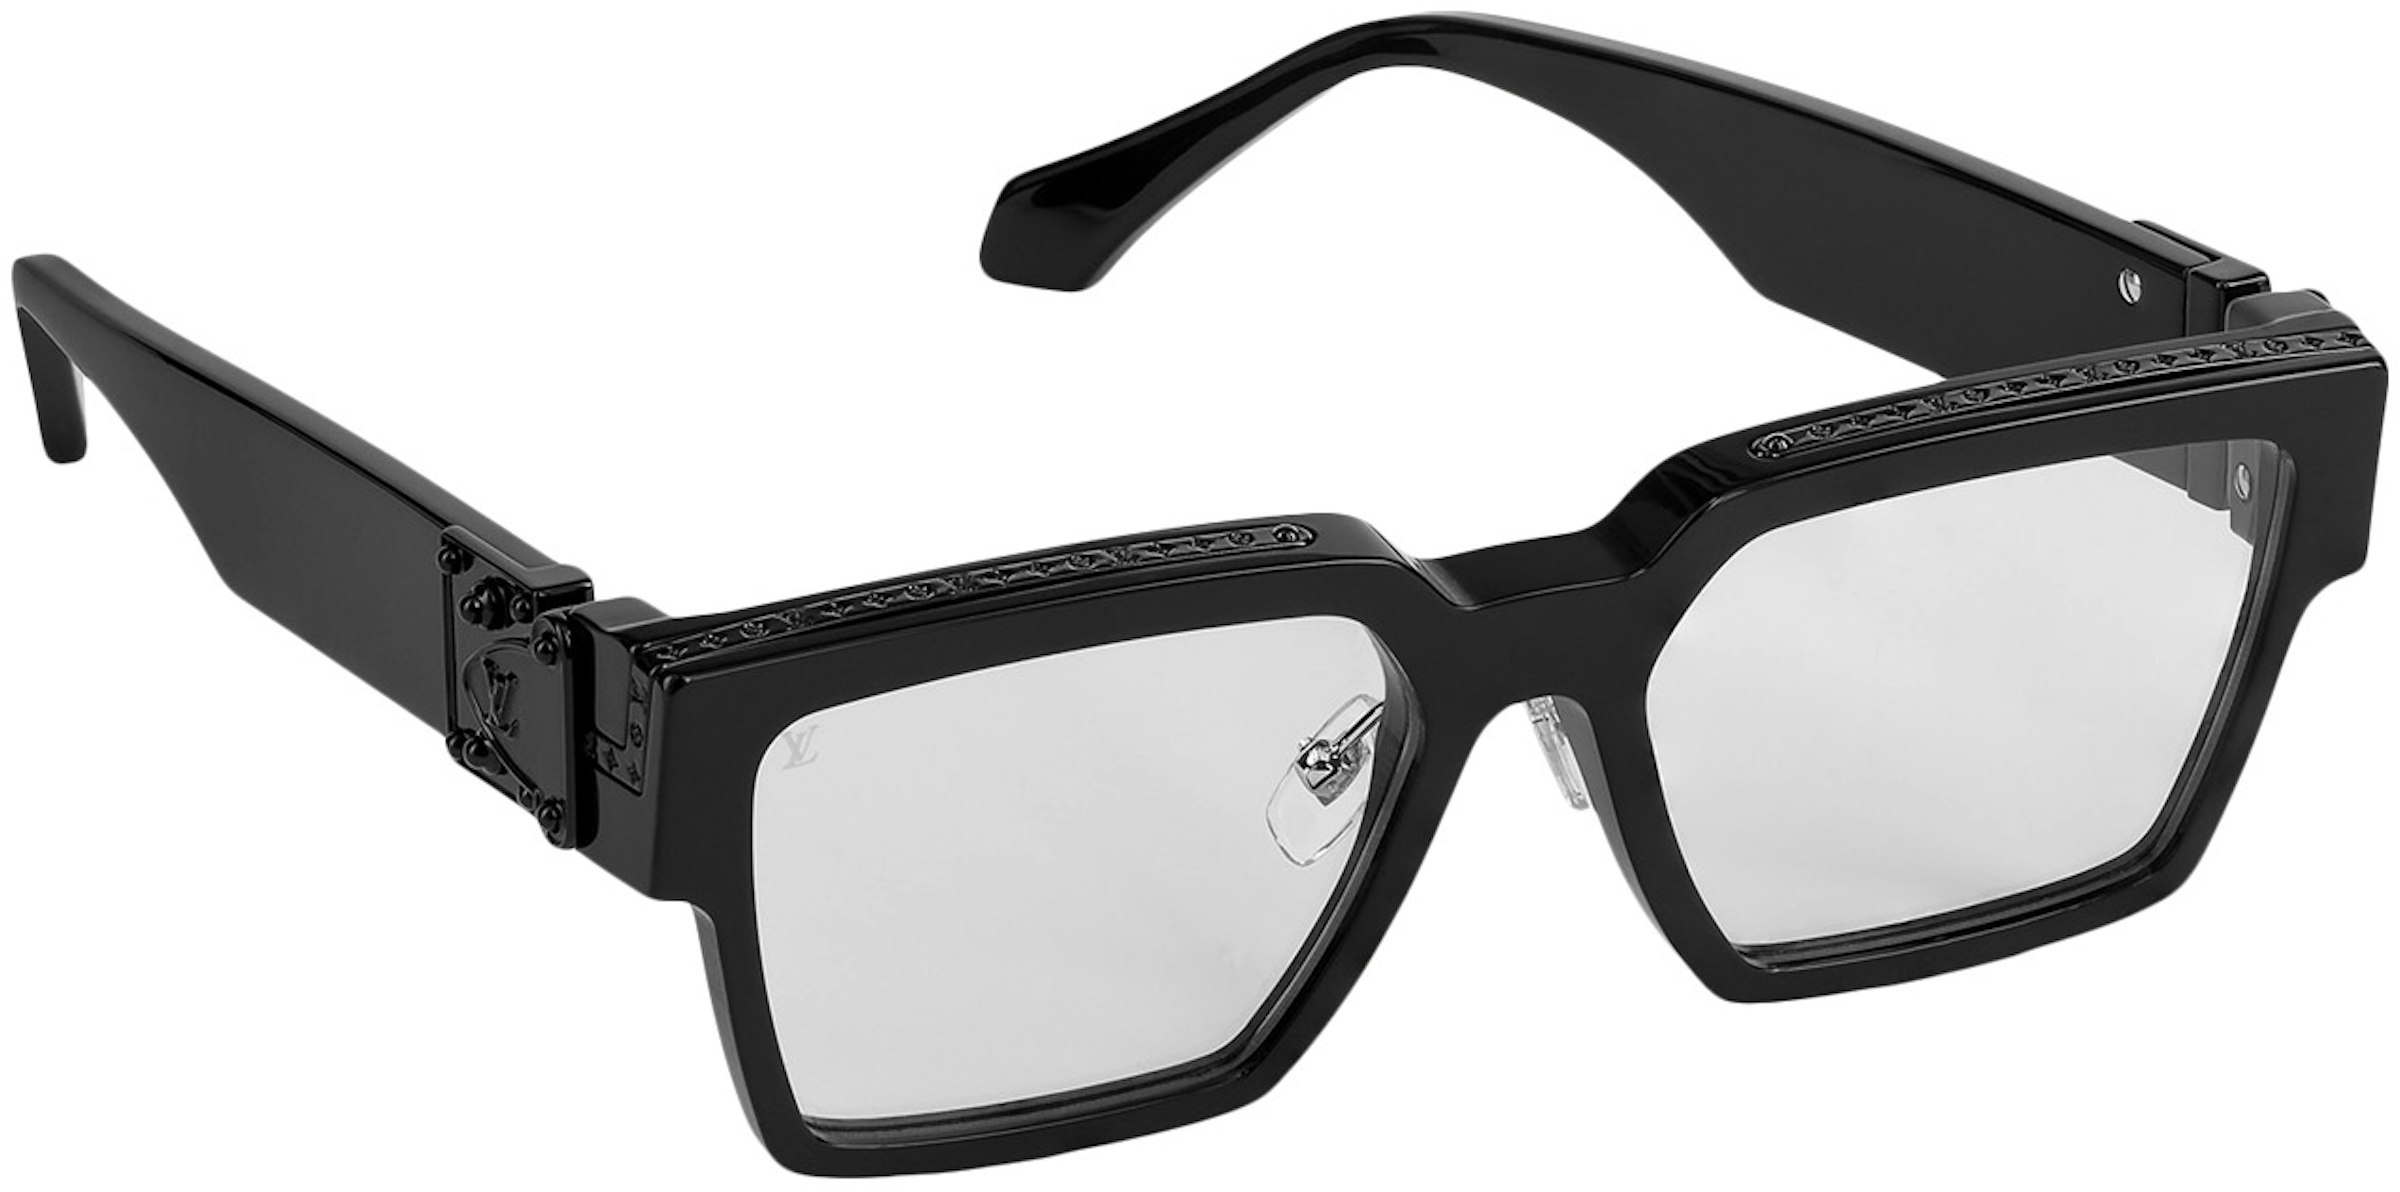 stilte paradijs machine Louis Vuitton 1.1 Clear Millionaires Sunglasses Black/Transparent in  Acetate - US